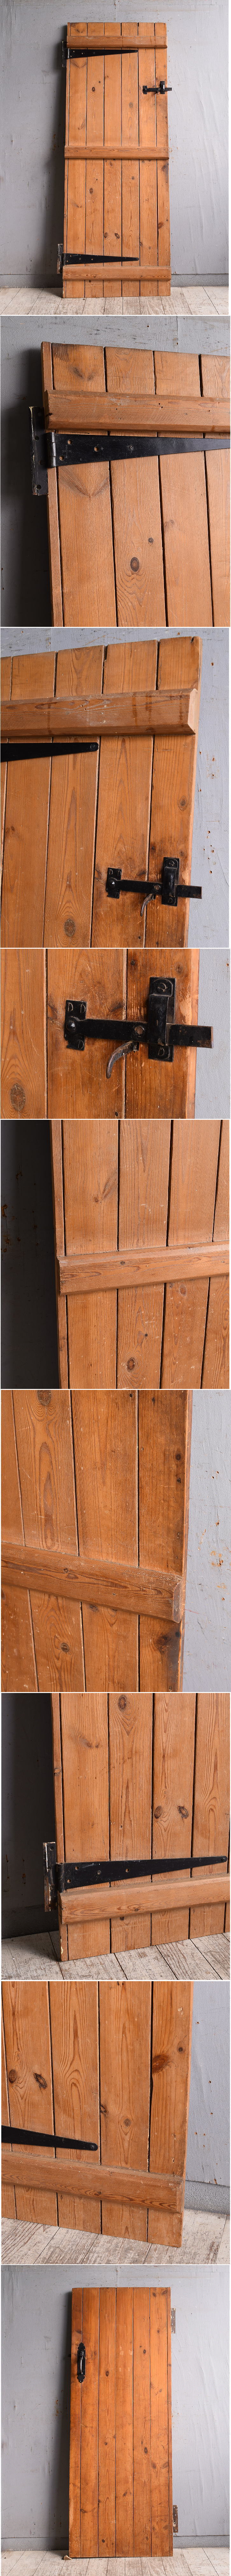 イギリス アンティーク オールドパイン ドア 扉 建具 10517